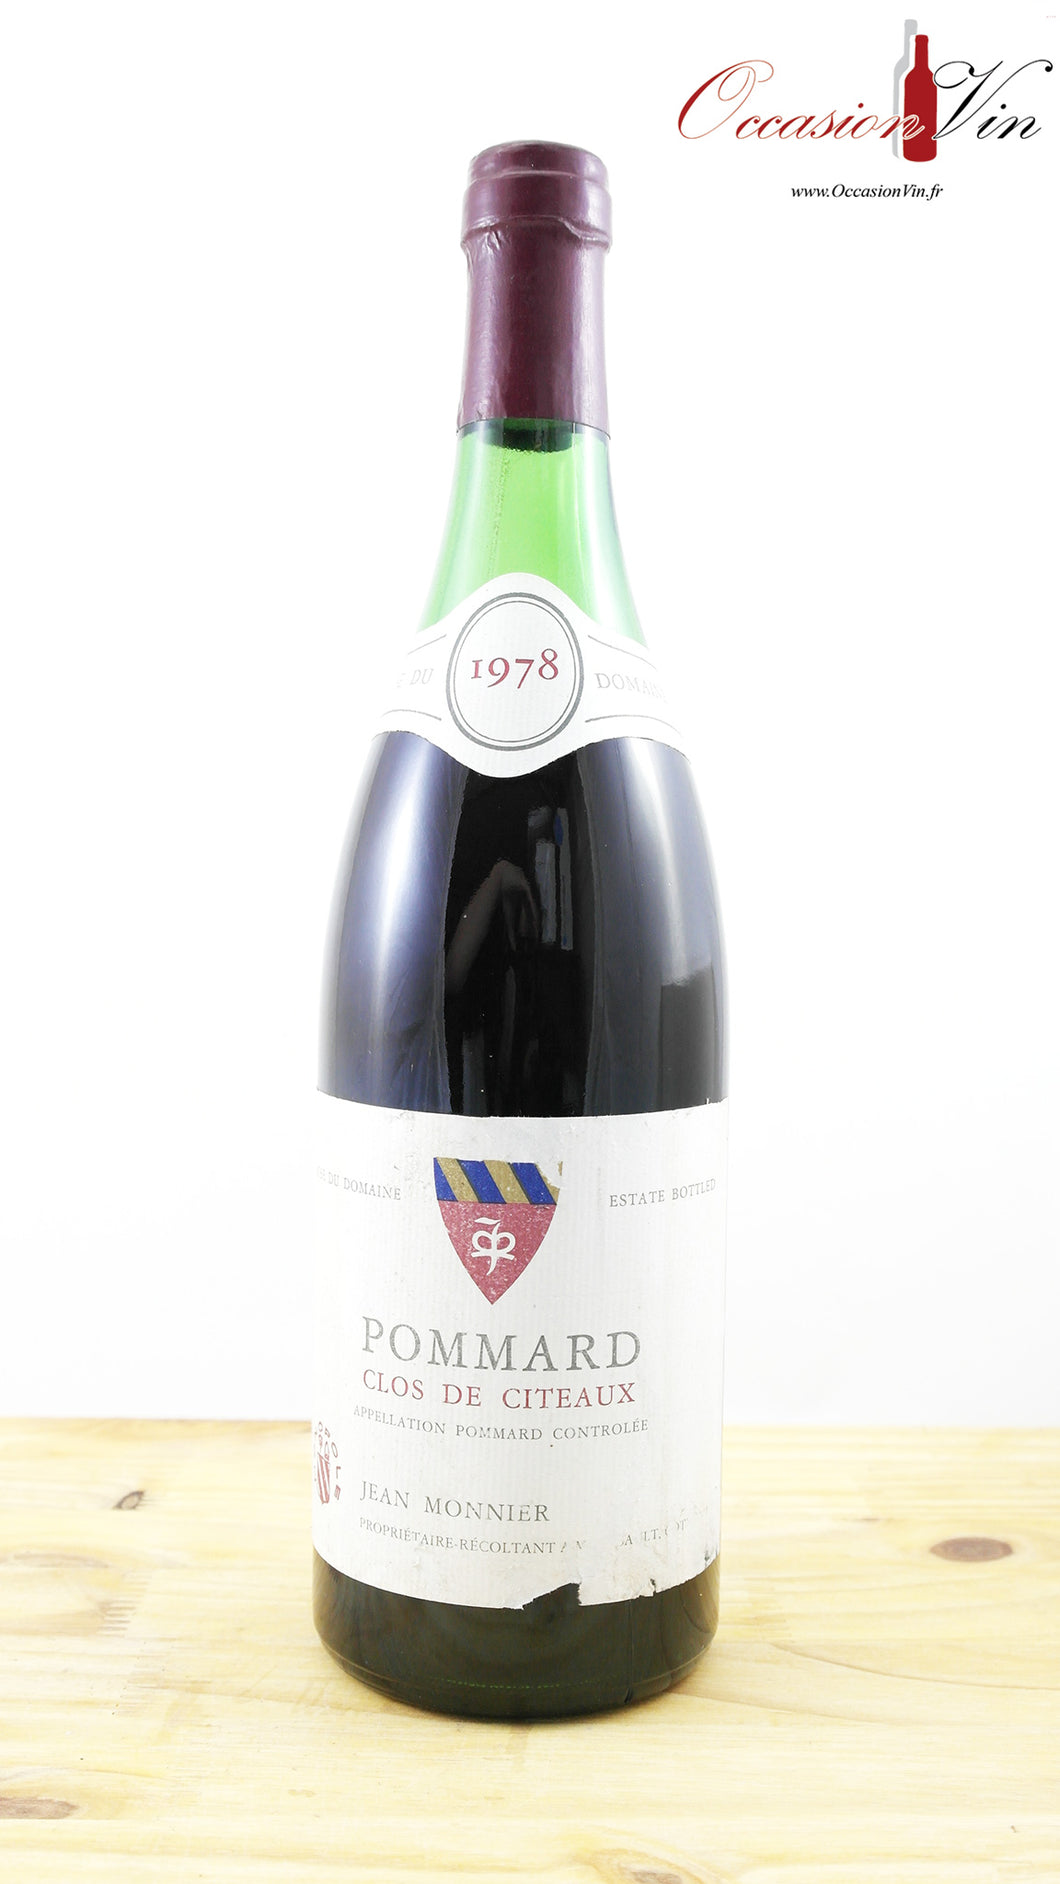 Clos de Citeaux Pommard Vin 1978